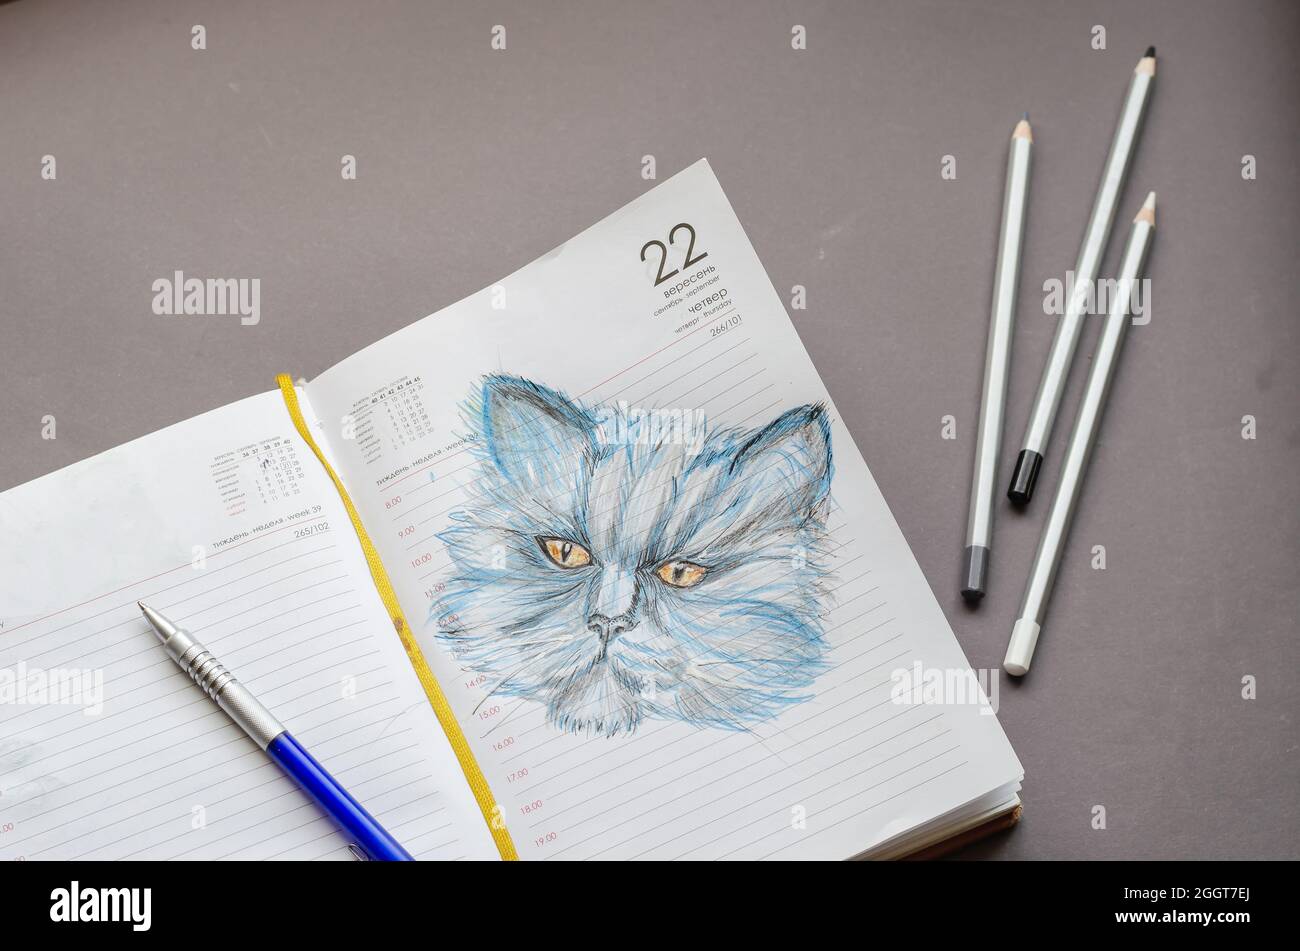 Dessin au crayon réaliste d'un chat sur les pages d'un journal ouvert. Banque D'Images